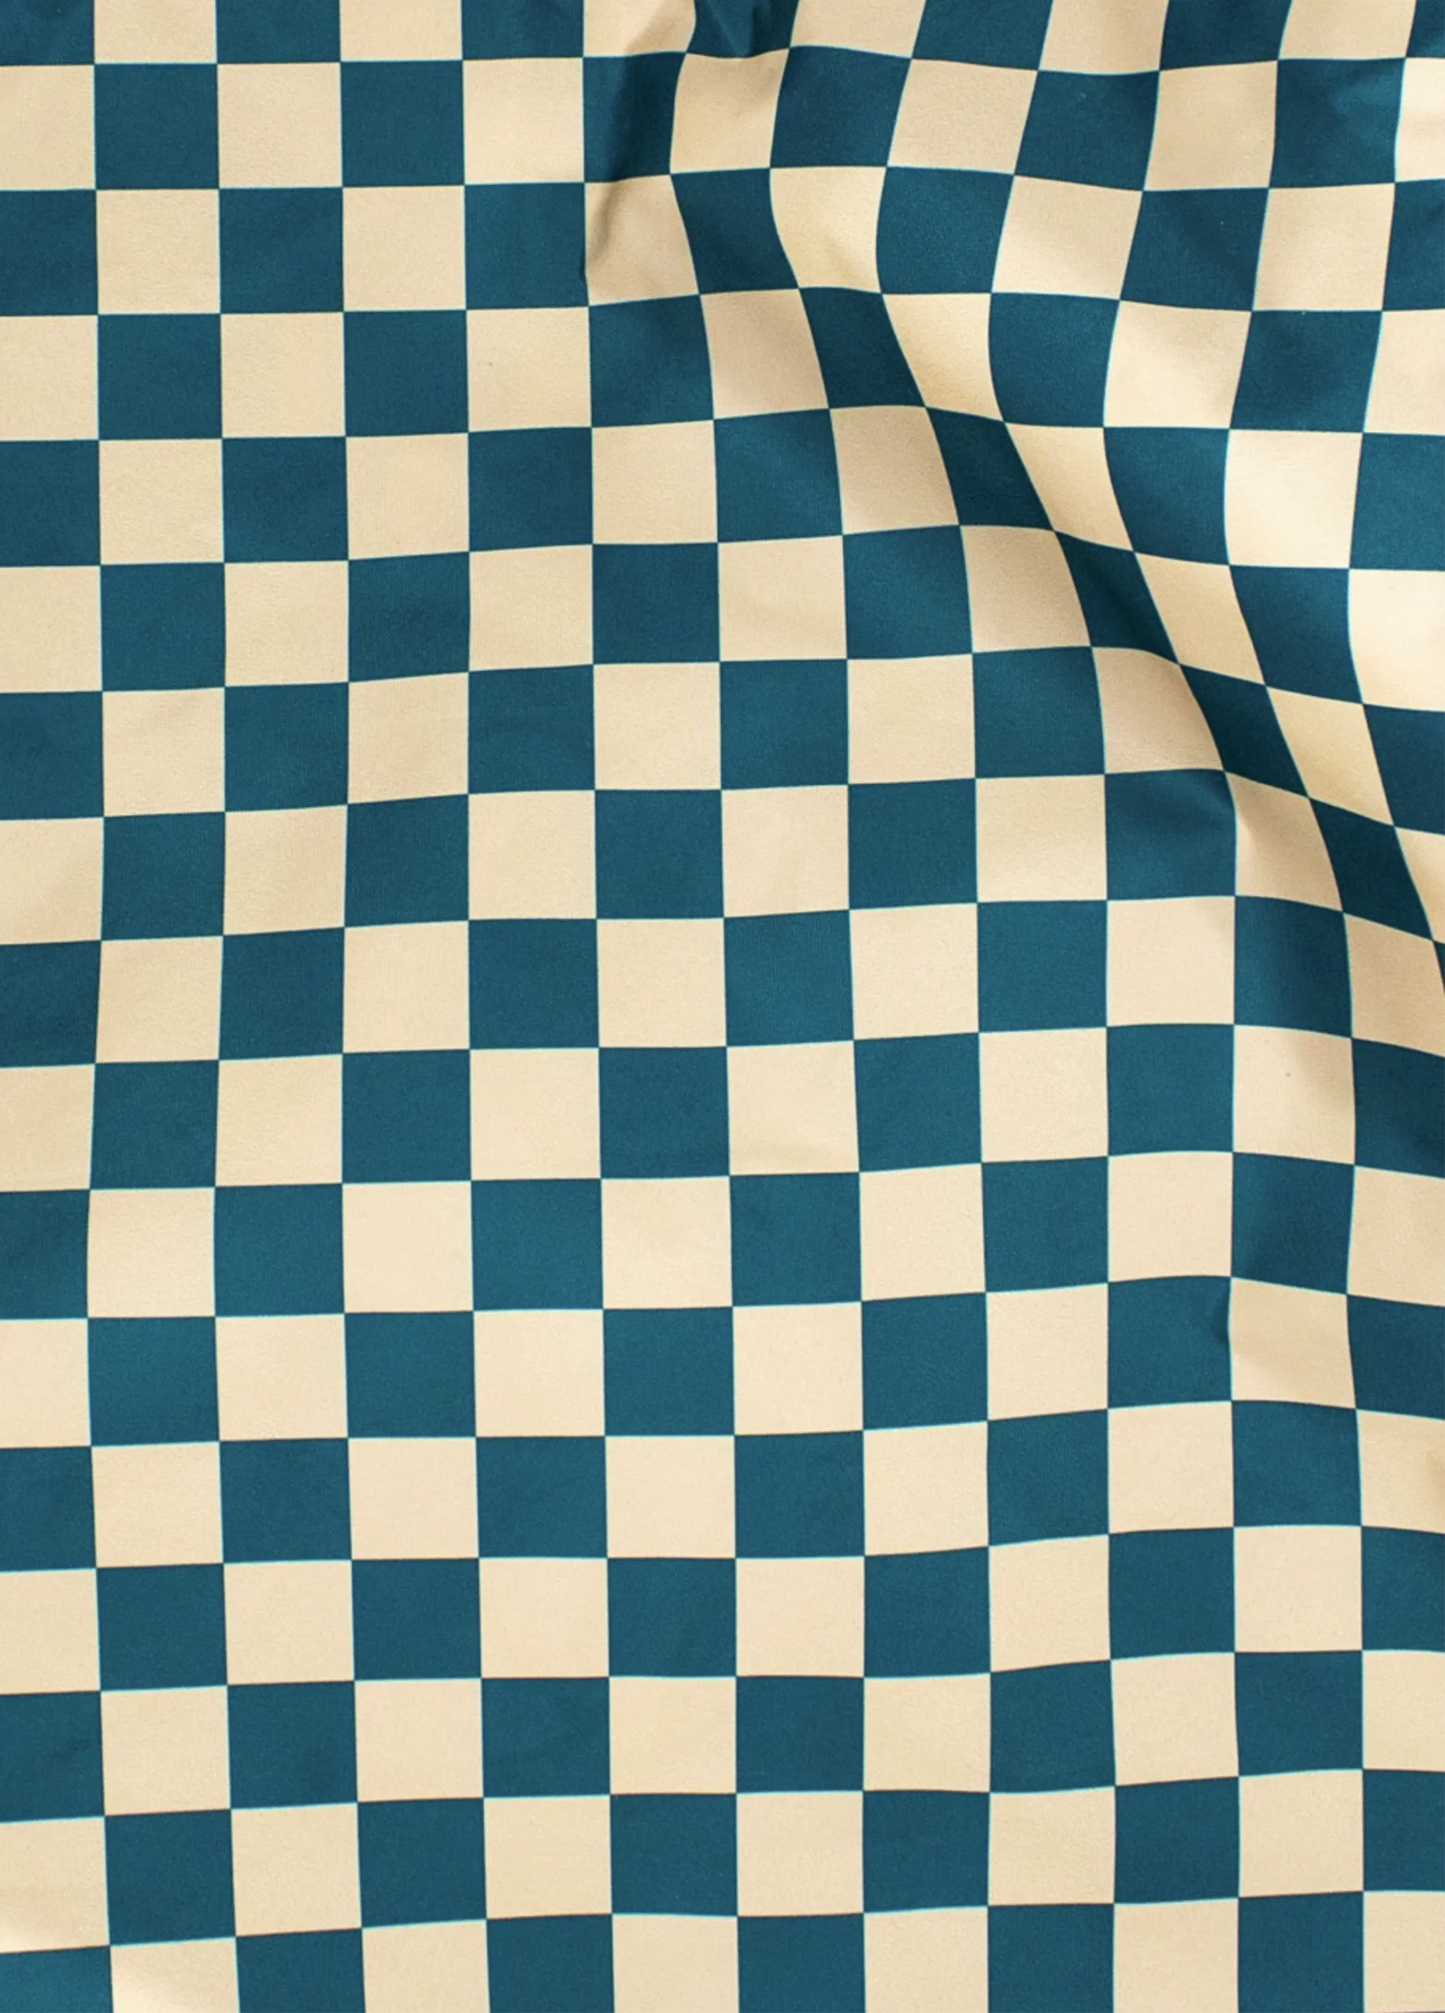 Kind Bag - Teal Checkerboard Reusable Bag